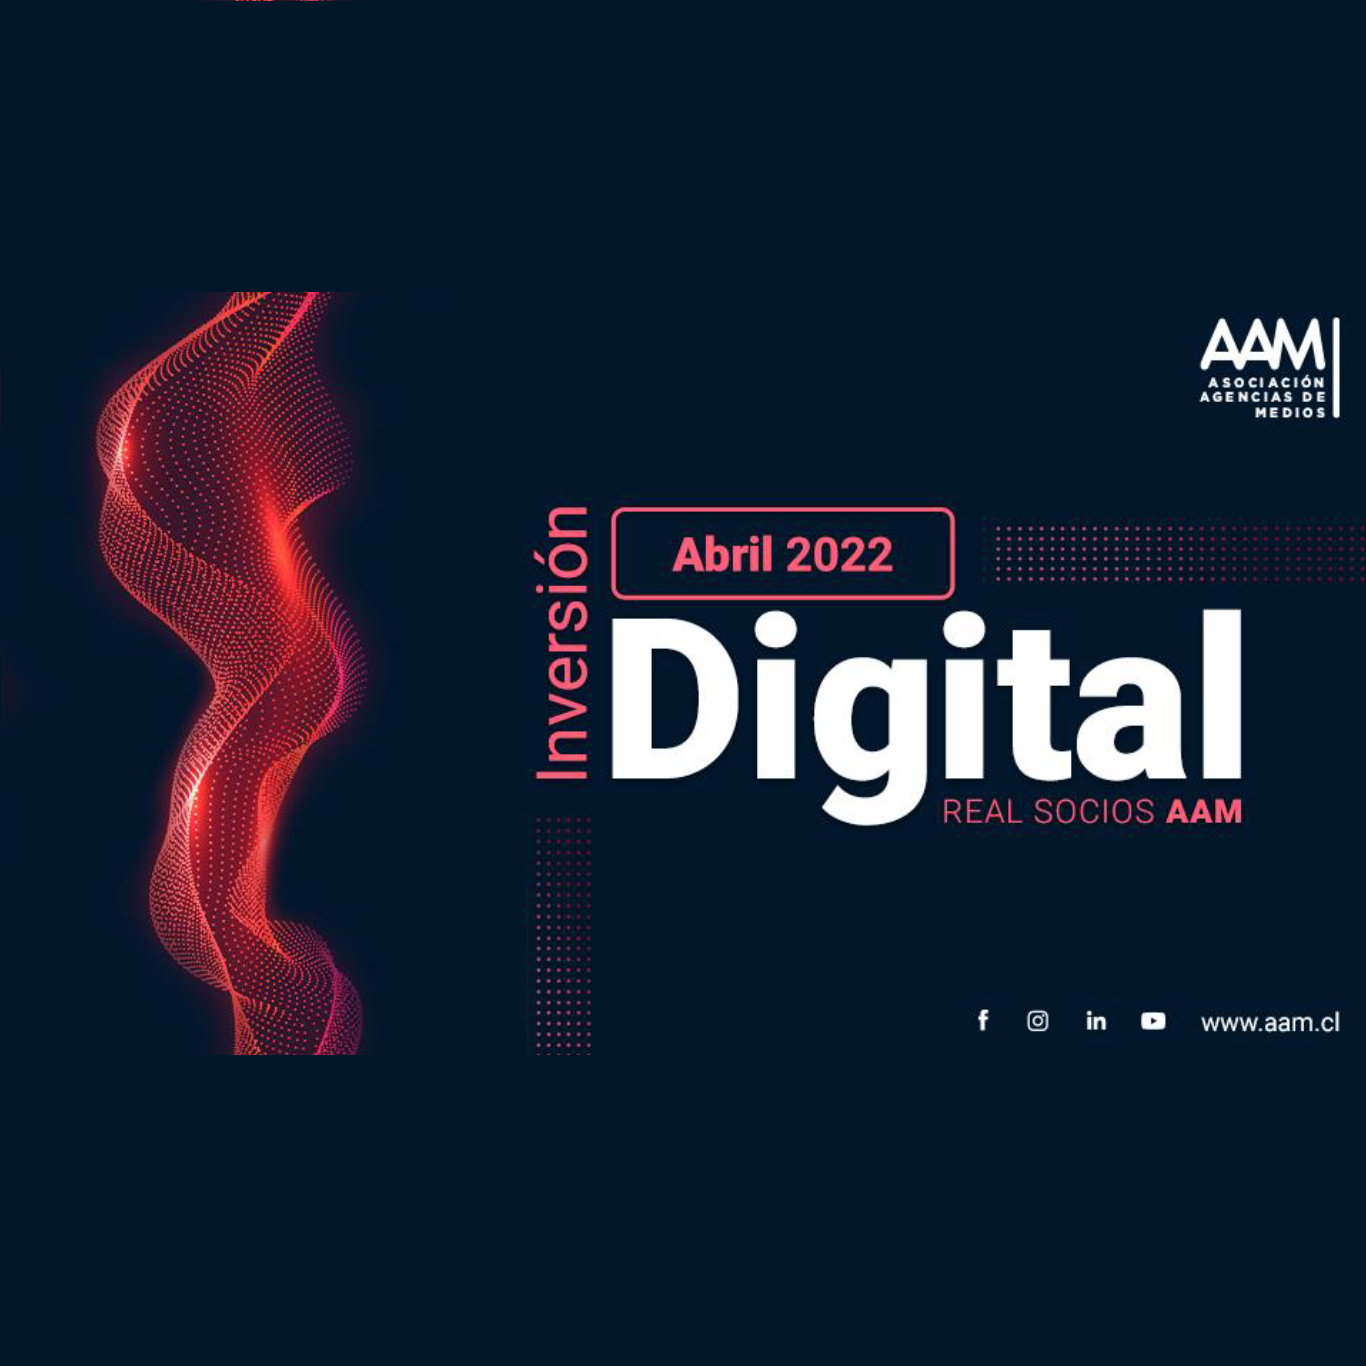 Inversión digital real socios AAM – abril 2022